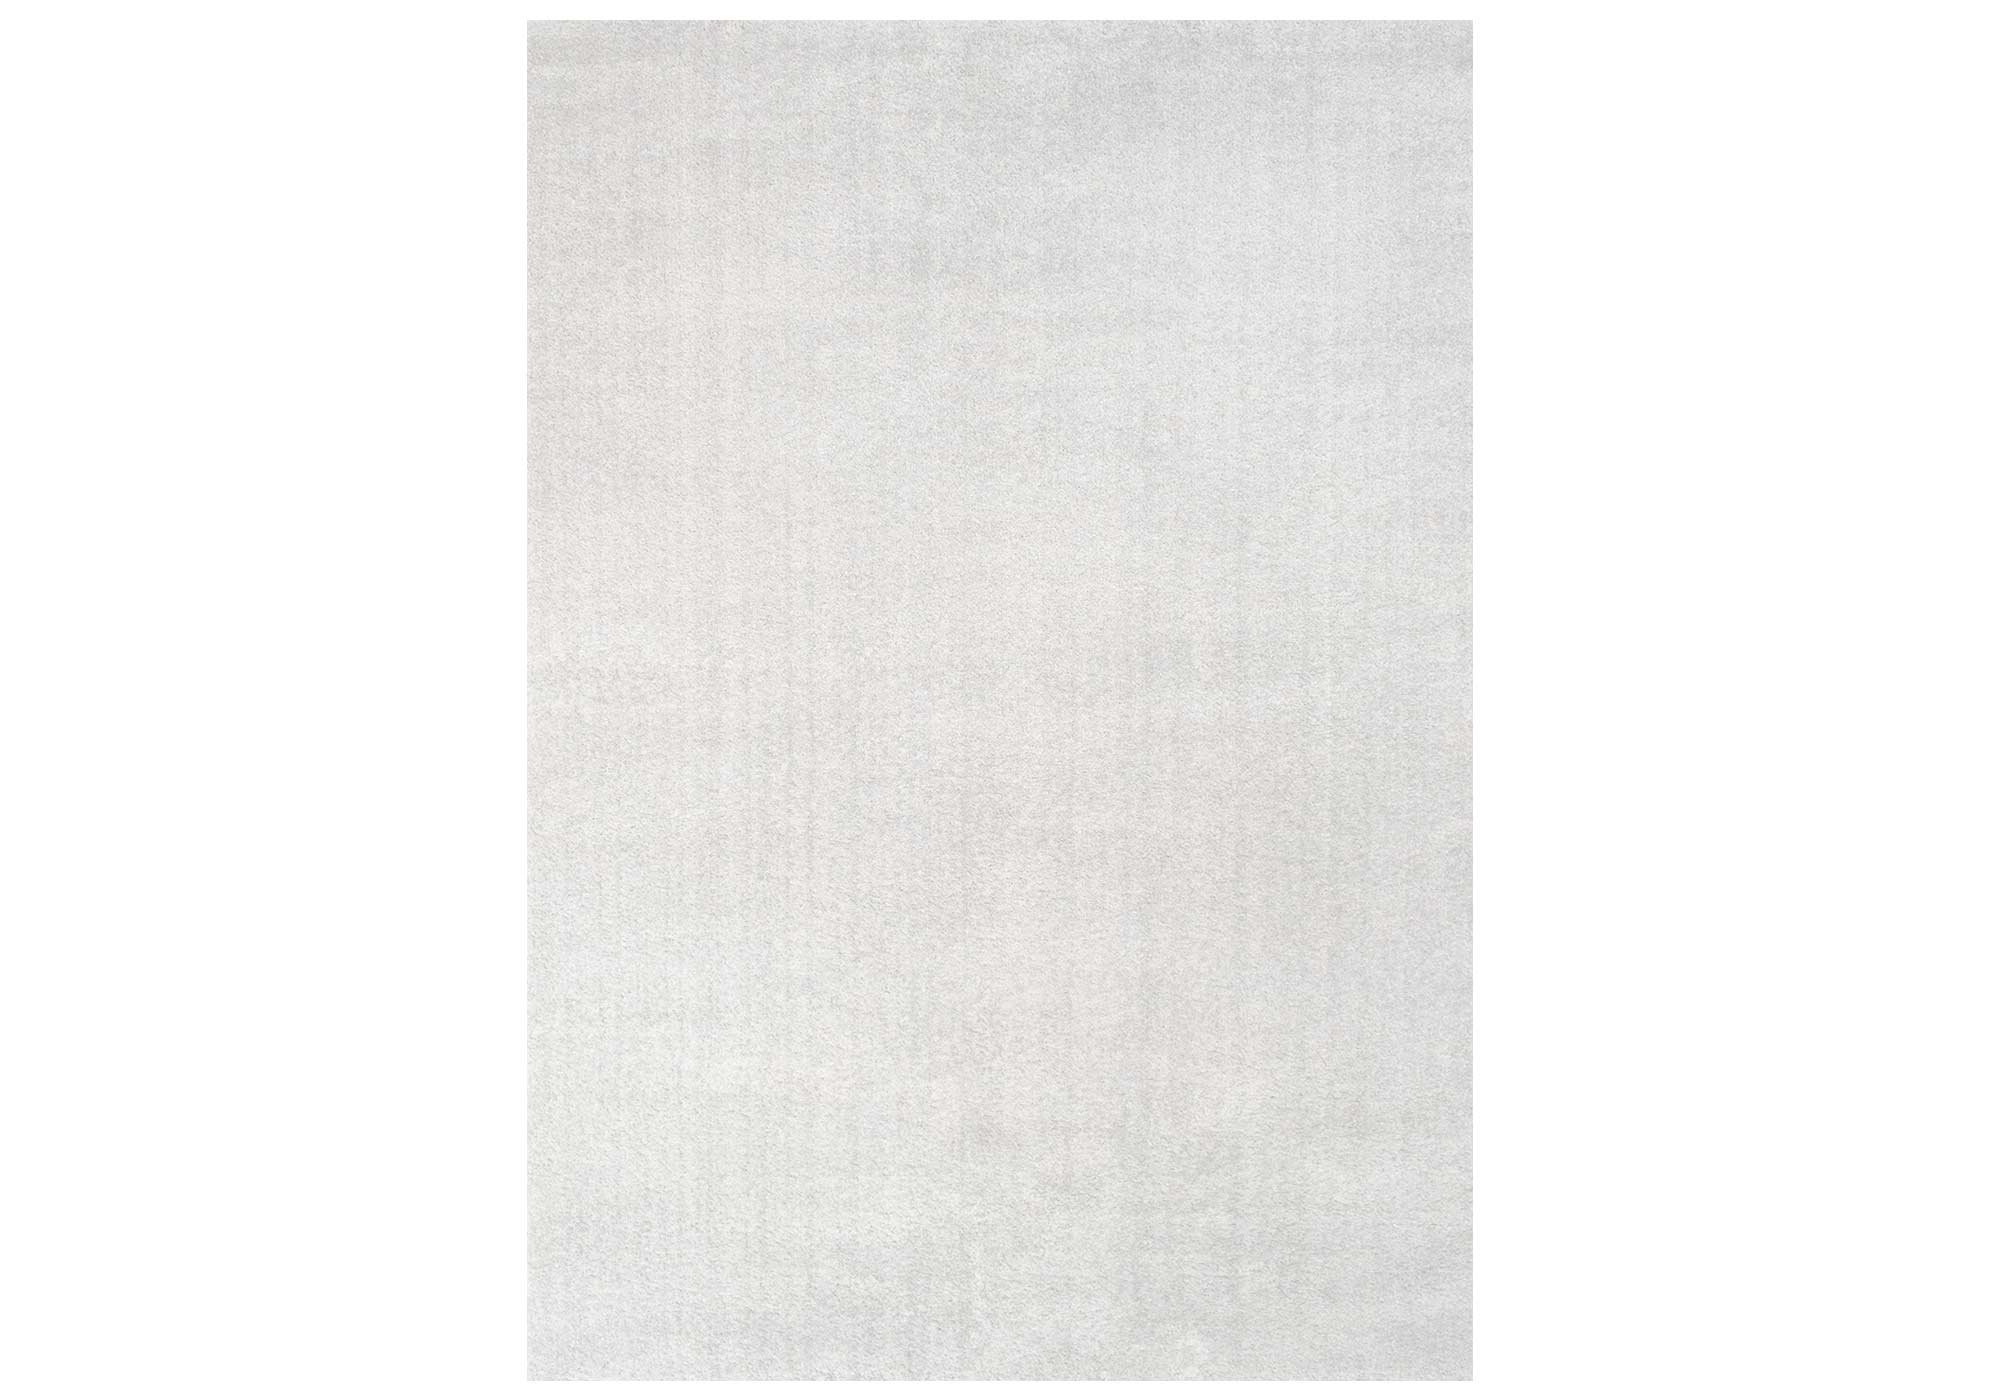 Festival Hochflor-Teppich 80 x 150 cm - weiß - 30 mm Höhe - weich - Delgardo 501